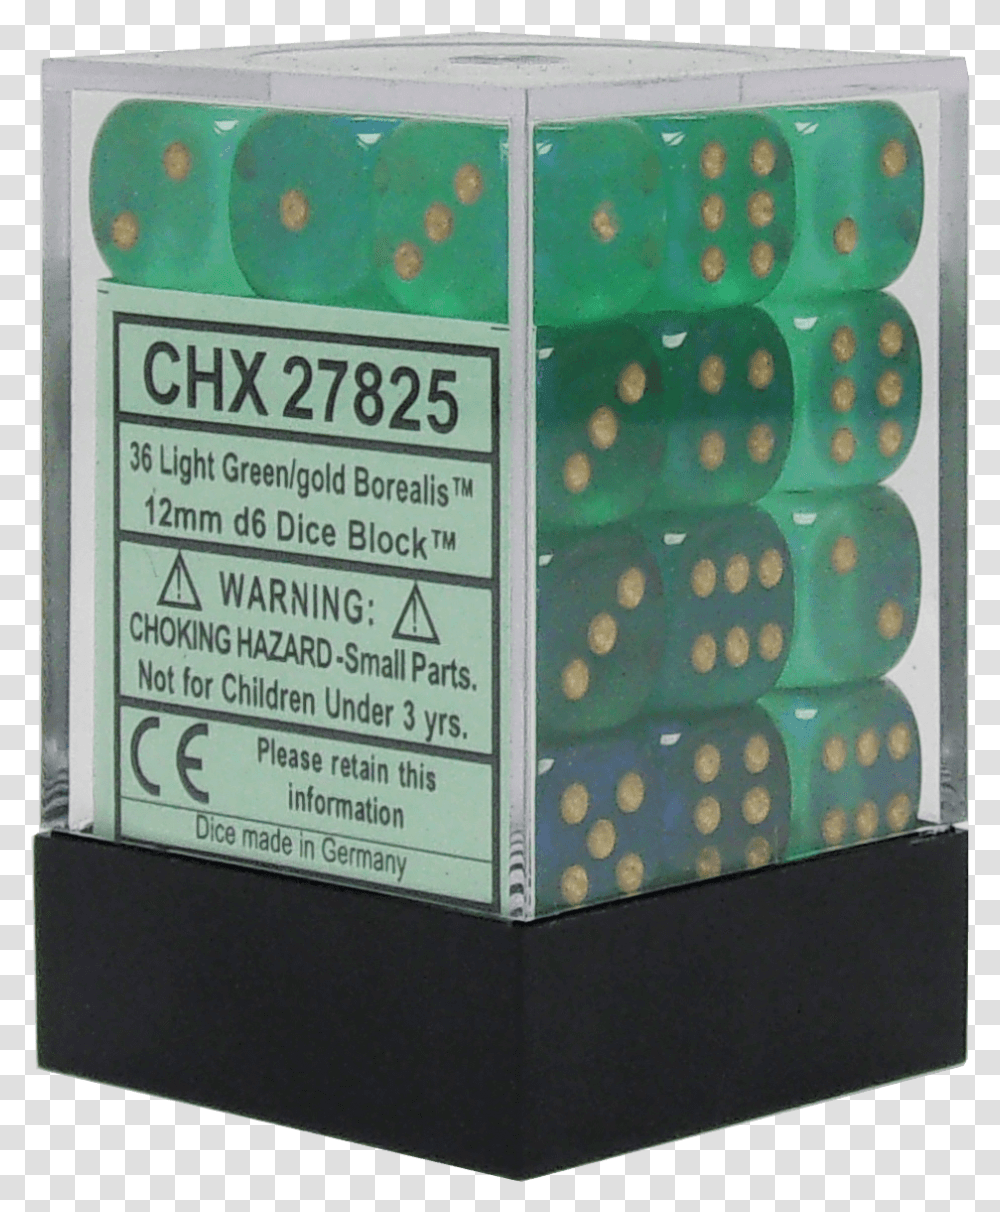 Borealis Light Green With Gold 12mm D6 Box, Carton, Cardboard, Game, Dice Transparent Png